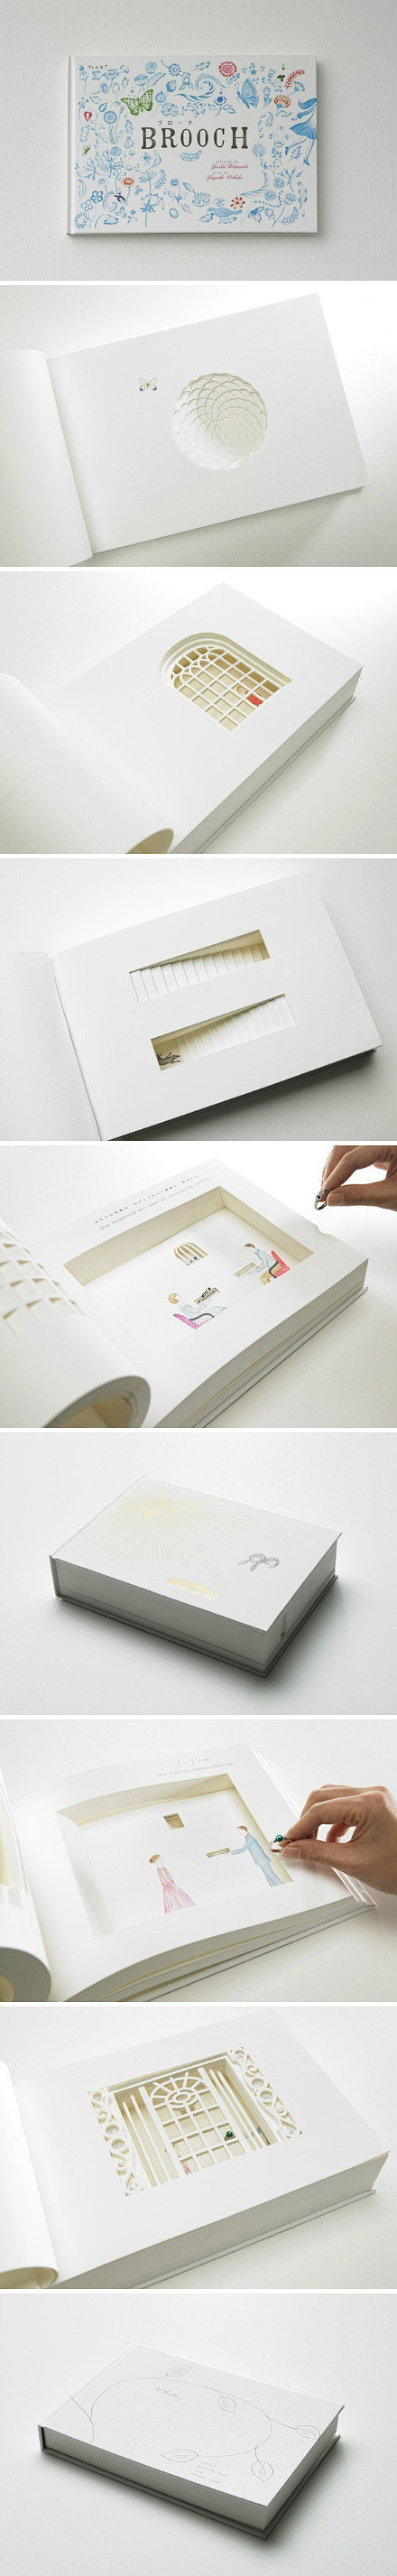 纸品设计的照片 - 微相册